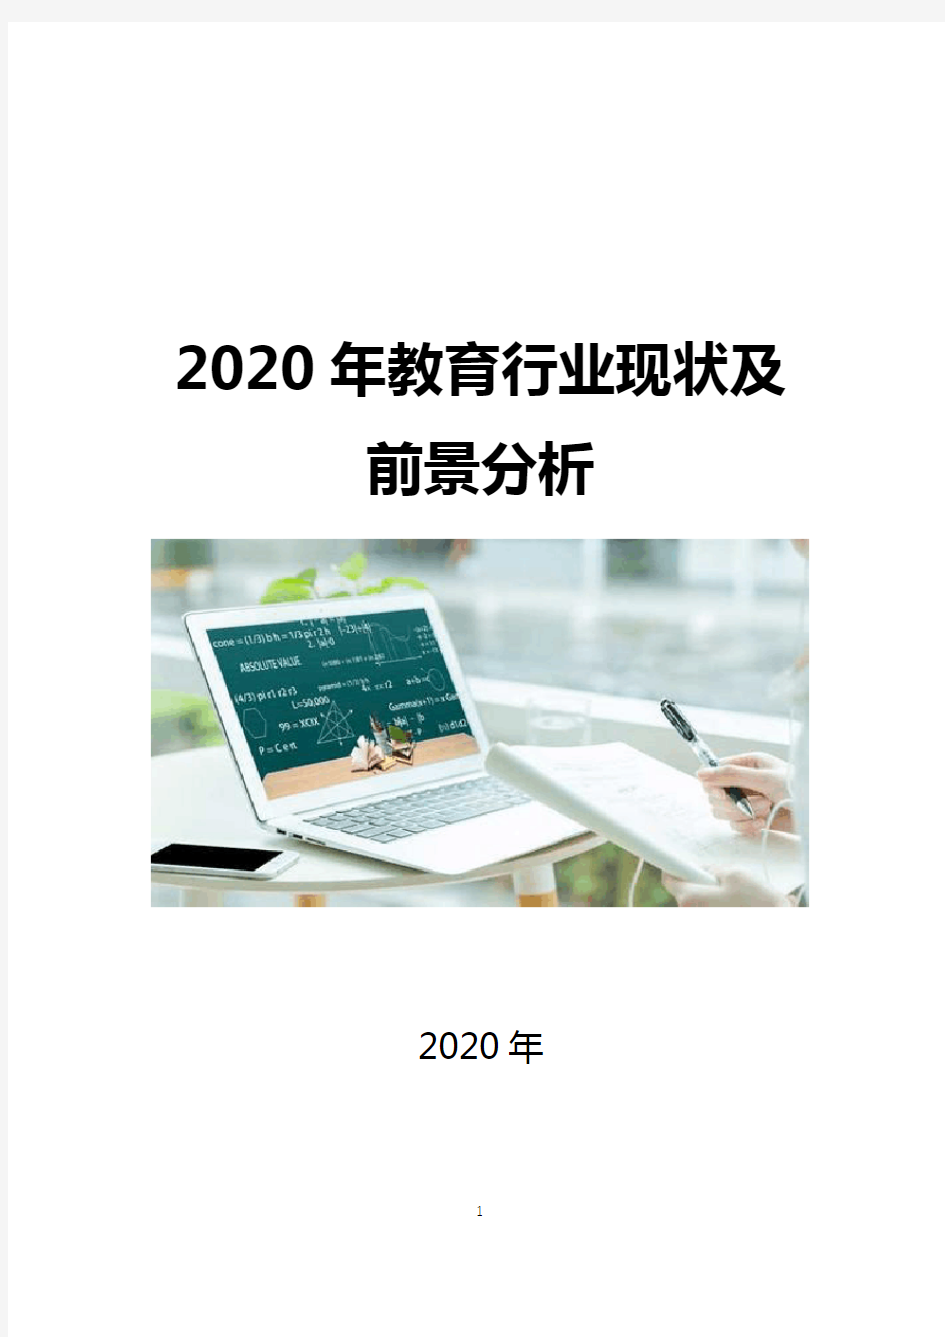 2020年教育行业现状及前景分析